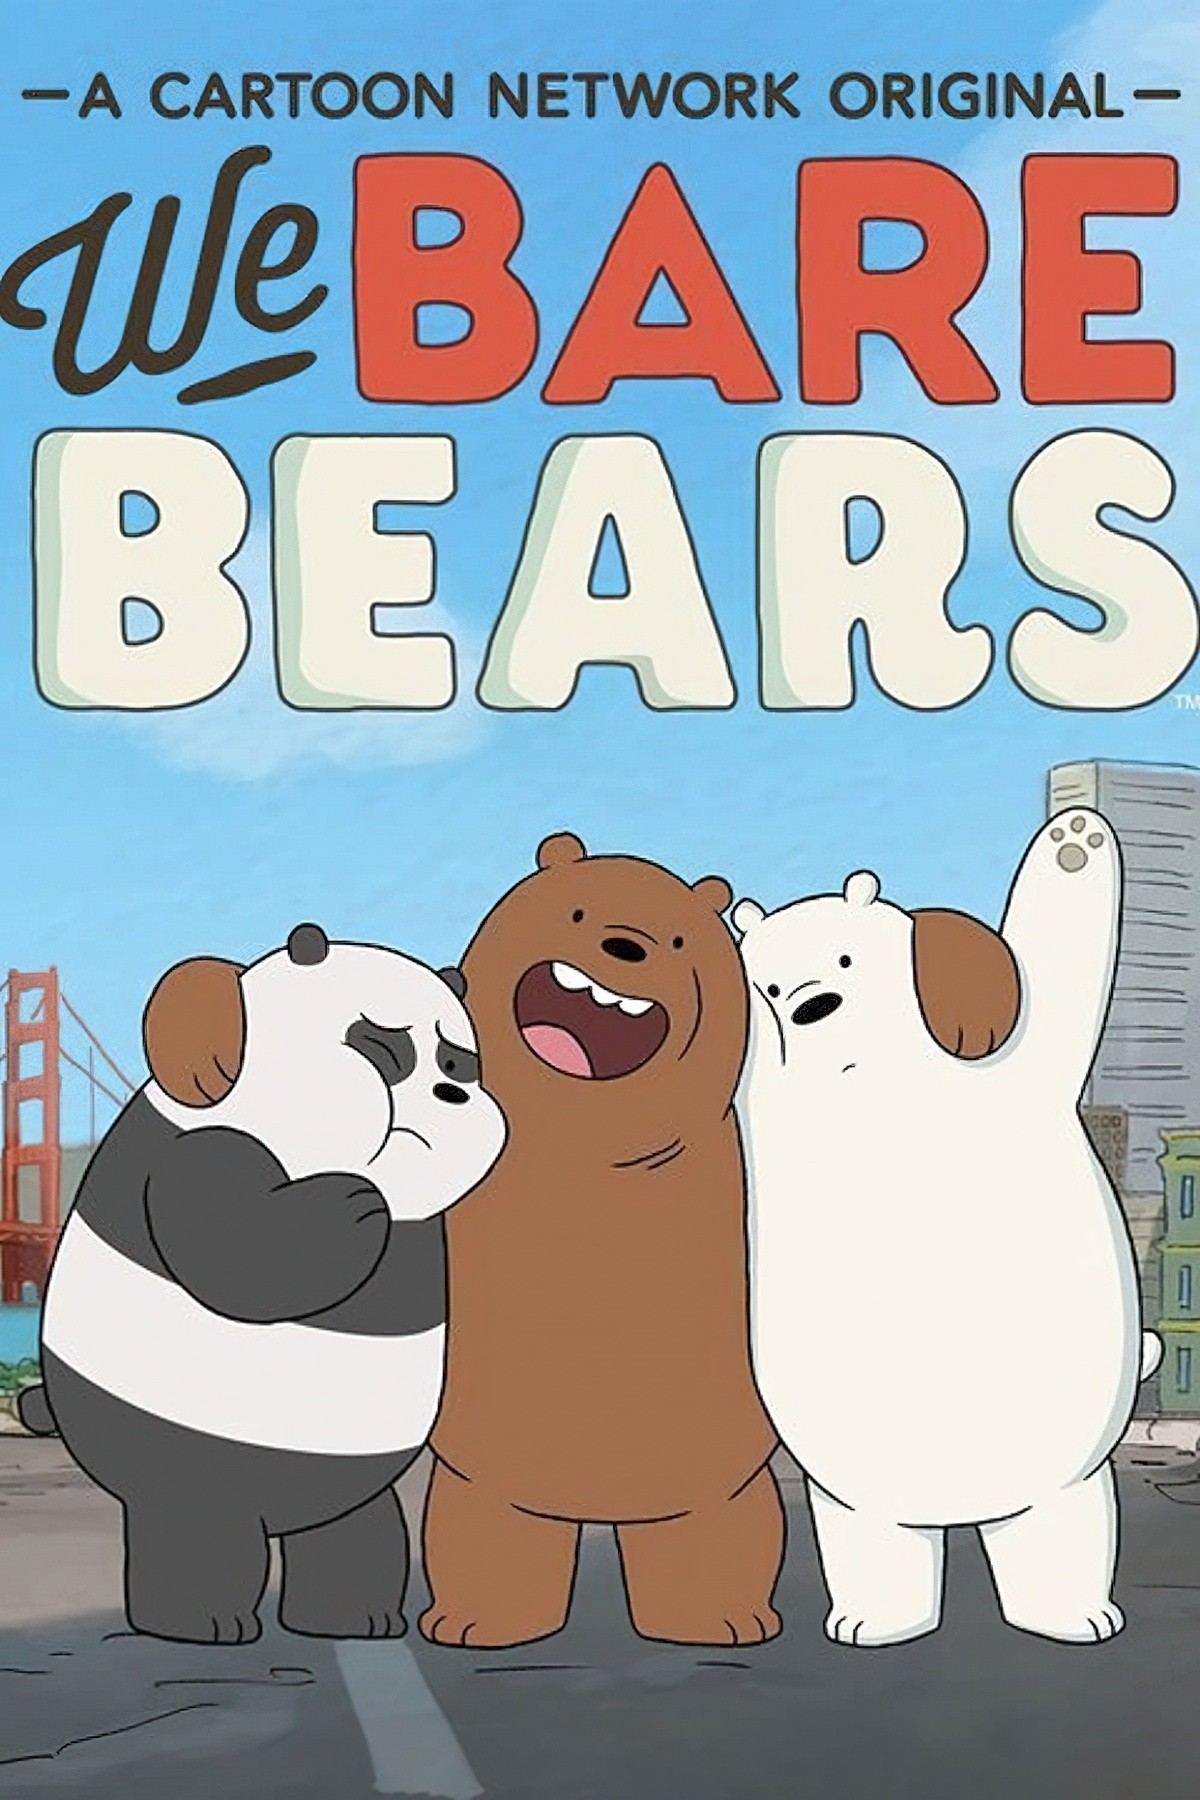 We Bare Bears Storytelling